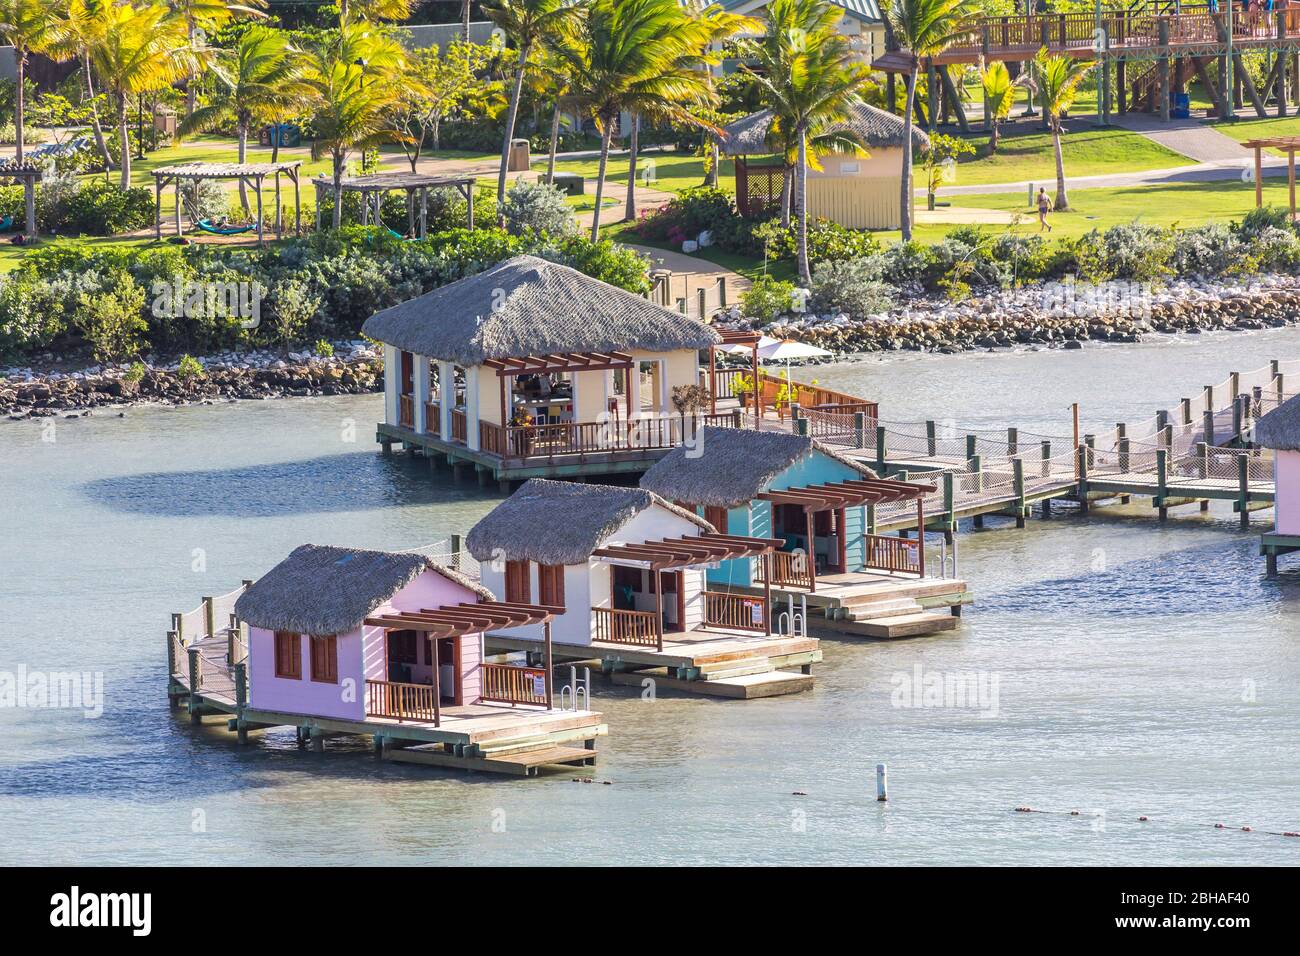 Hotelanlage, Aussicht vom Kreuzfahrtschiff auf Touristenzentrum, Amber Cove Cruise Terminal, Hafen, Maimón, Dominikanische Republik, Große Antillen, K Stock Photo